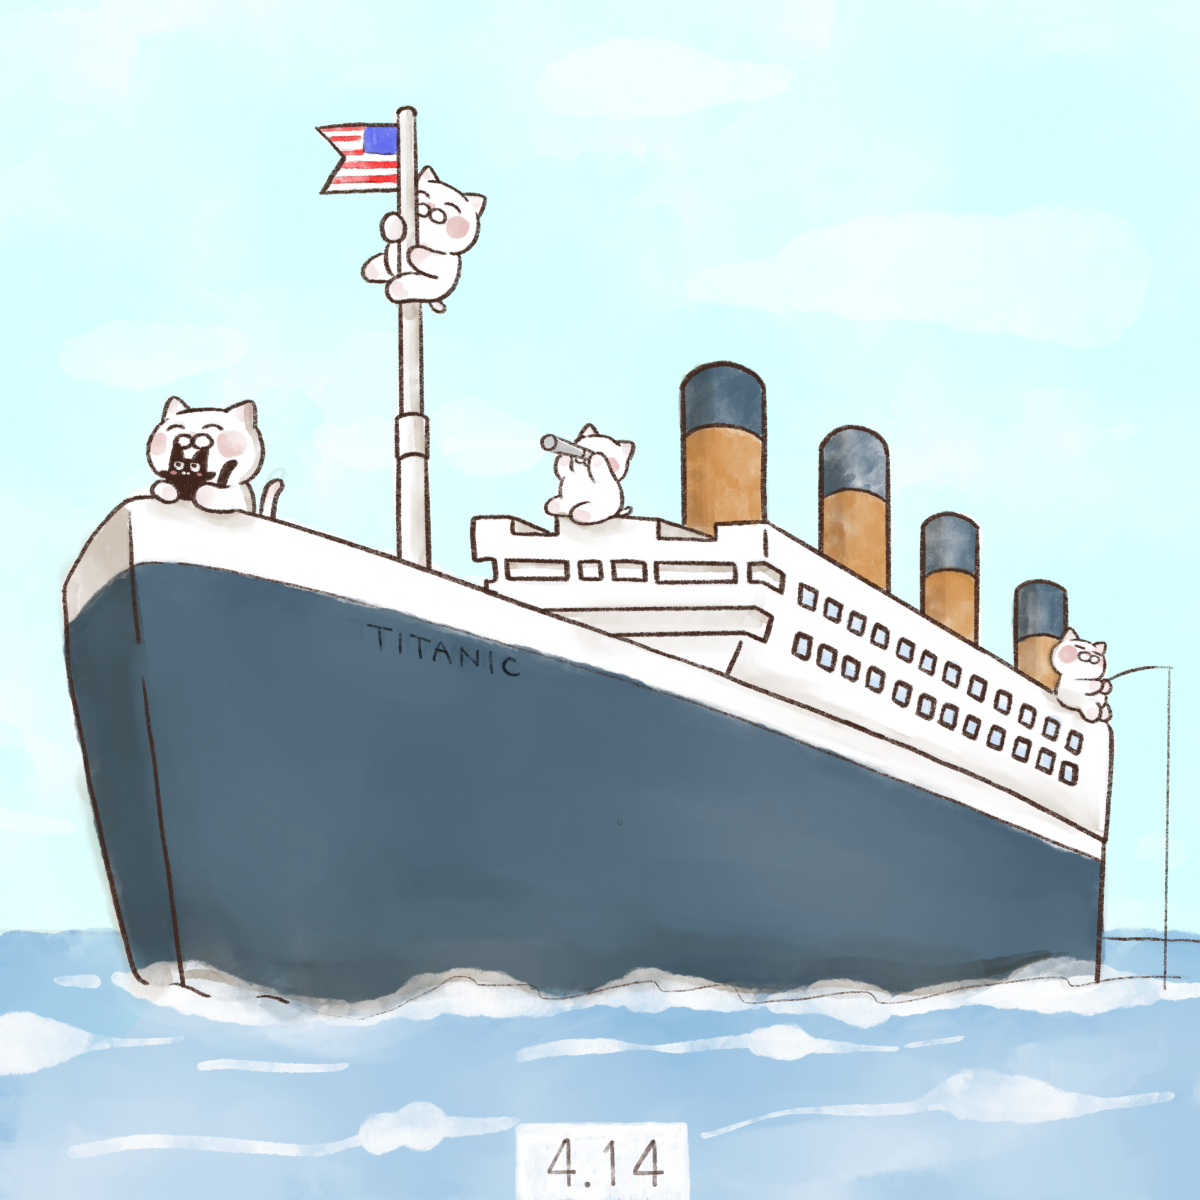 大和猫 4月14日 タイタニック号の日 Sosの日 1912年のこの日 豪華客船タイタニック号がニューファンドランド島沖で氷山に衝突しました T Co B0scazlnkq Twitter